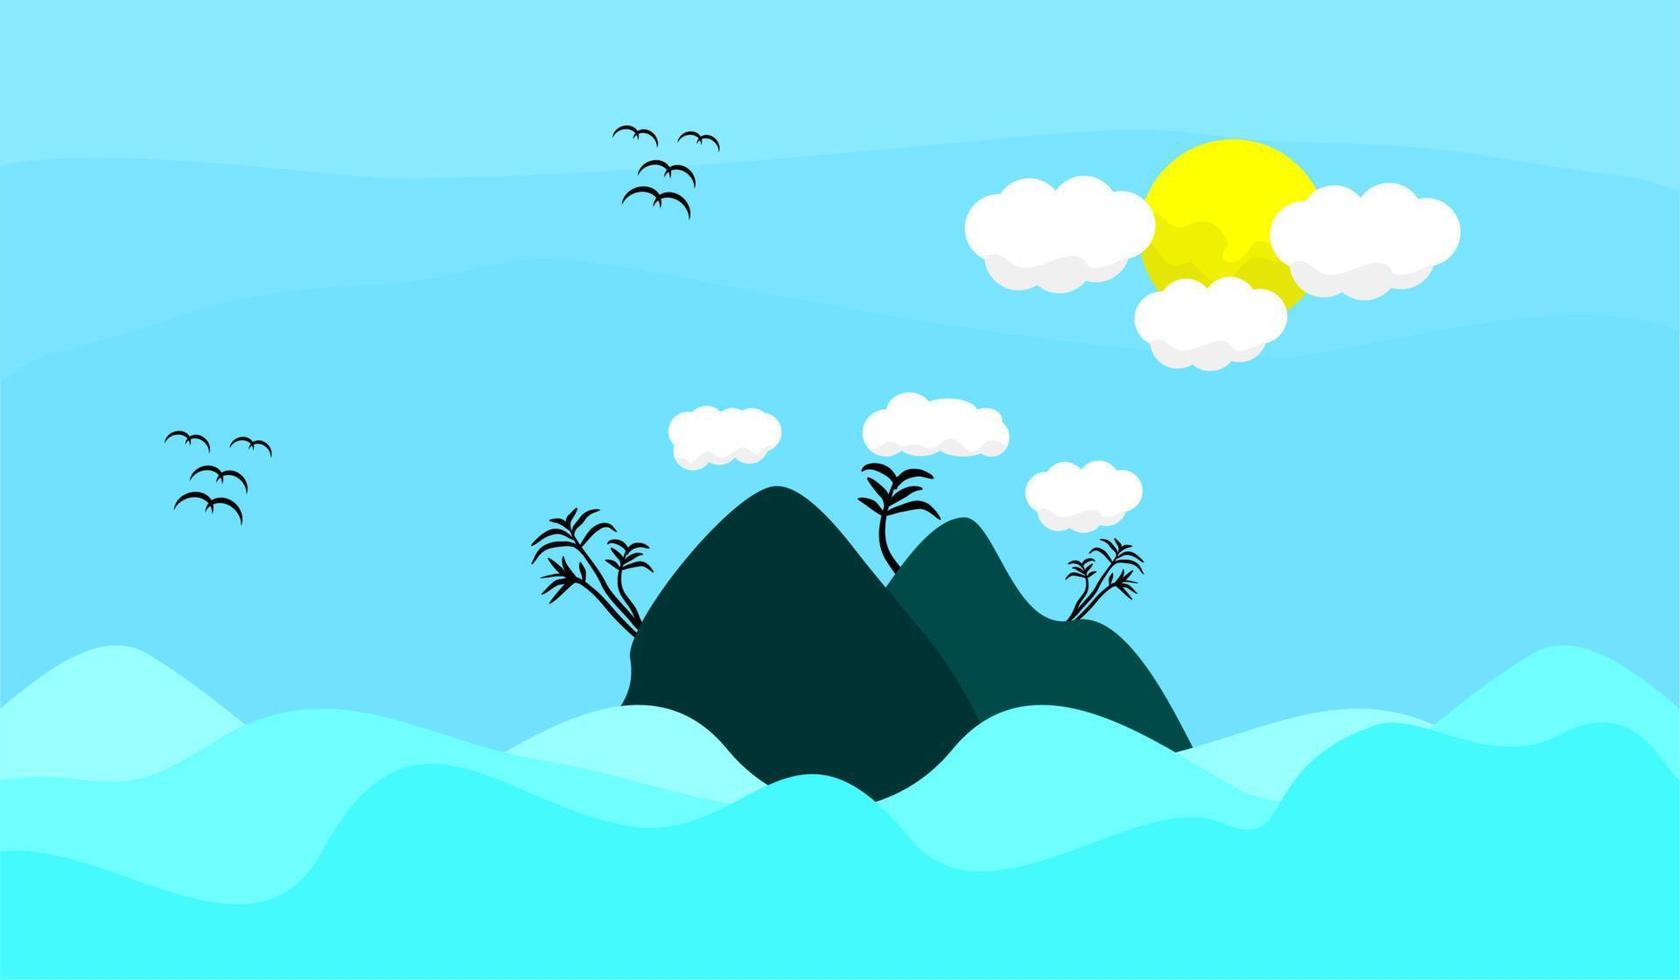 ilustración plana de vistas al mar, olas, nubes y sol. adecuado para carteles, pancartas, publicidad, promoción y antecedentes vector